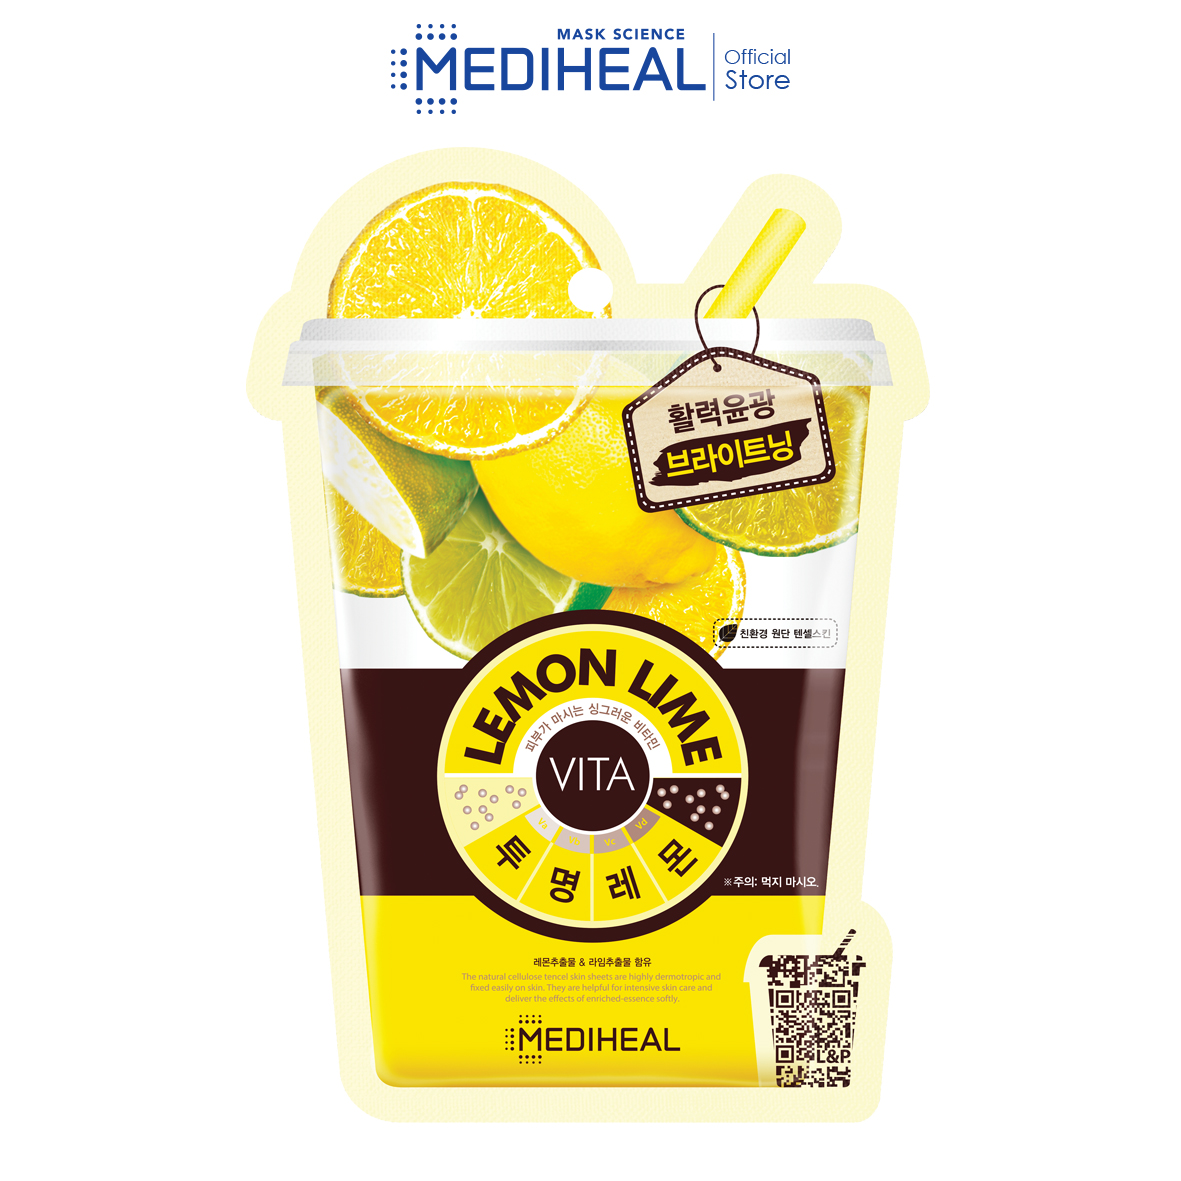 Mediheal Lemonlime Vita Mask (10's)